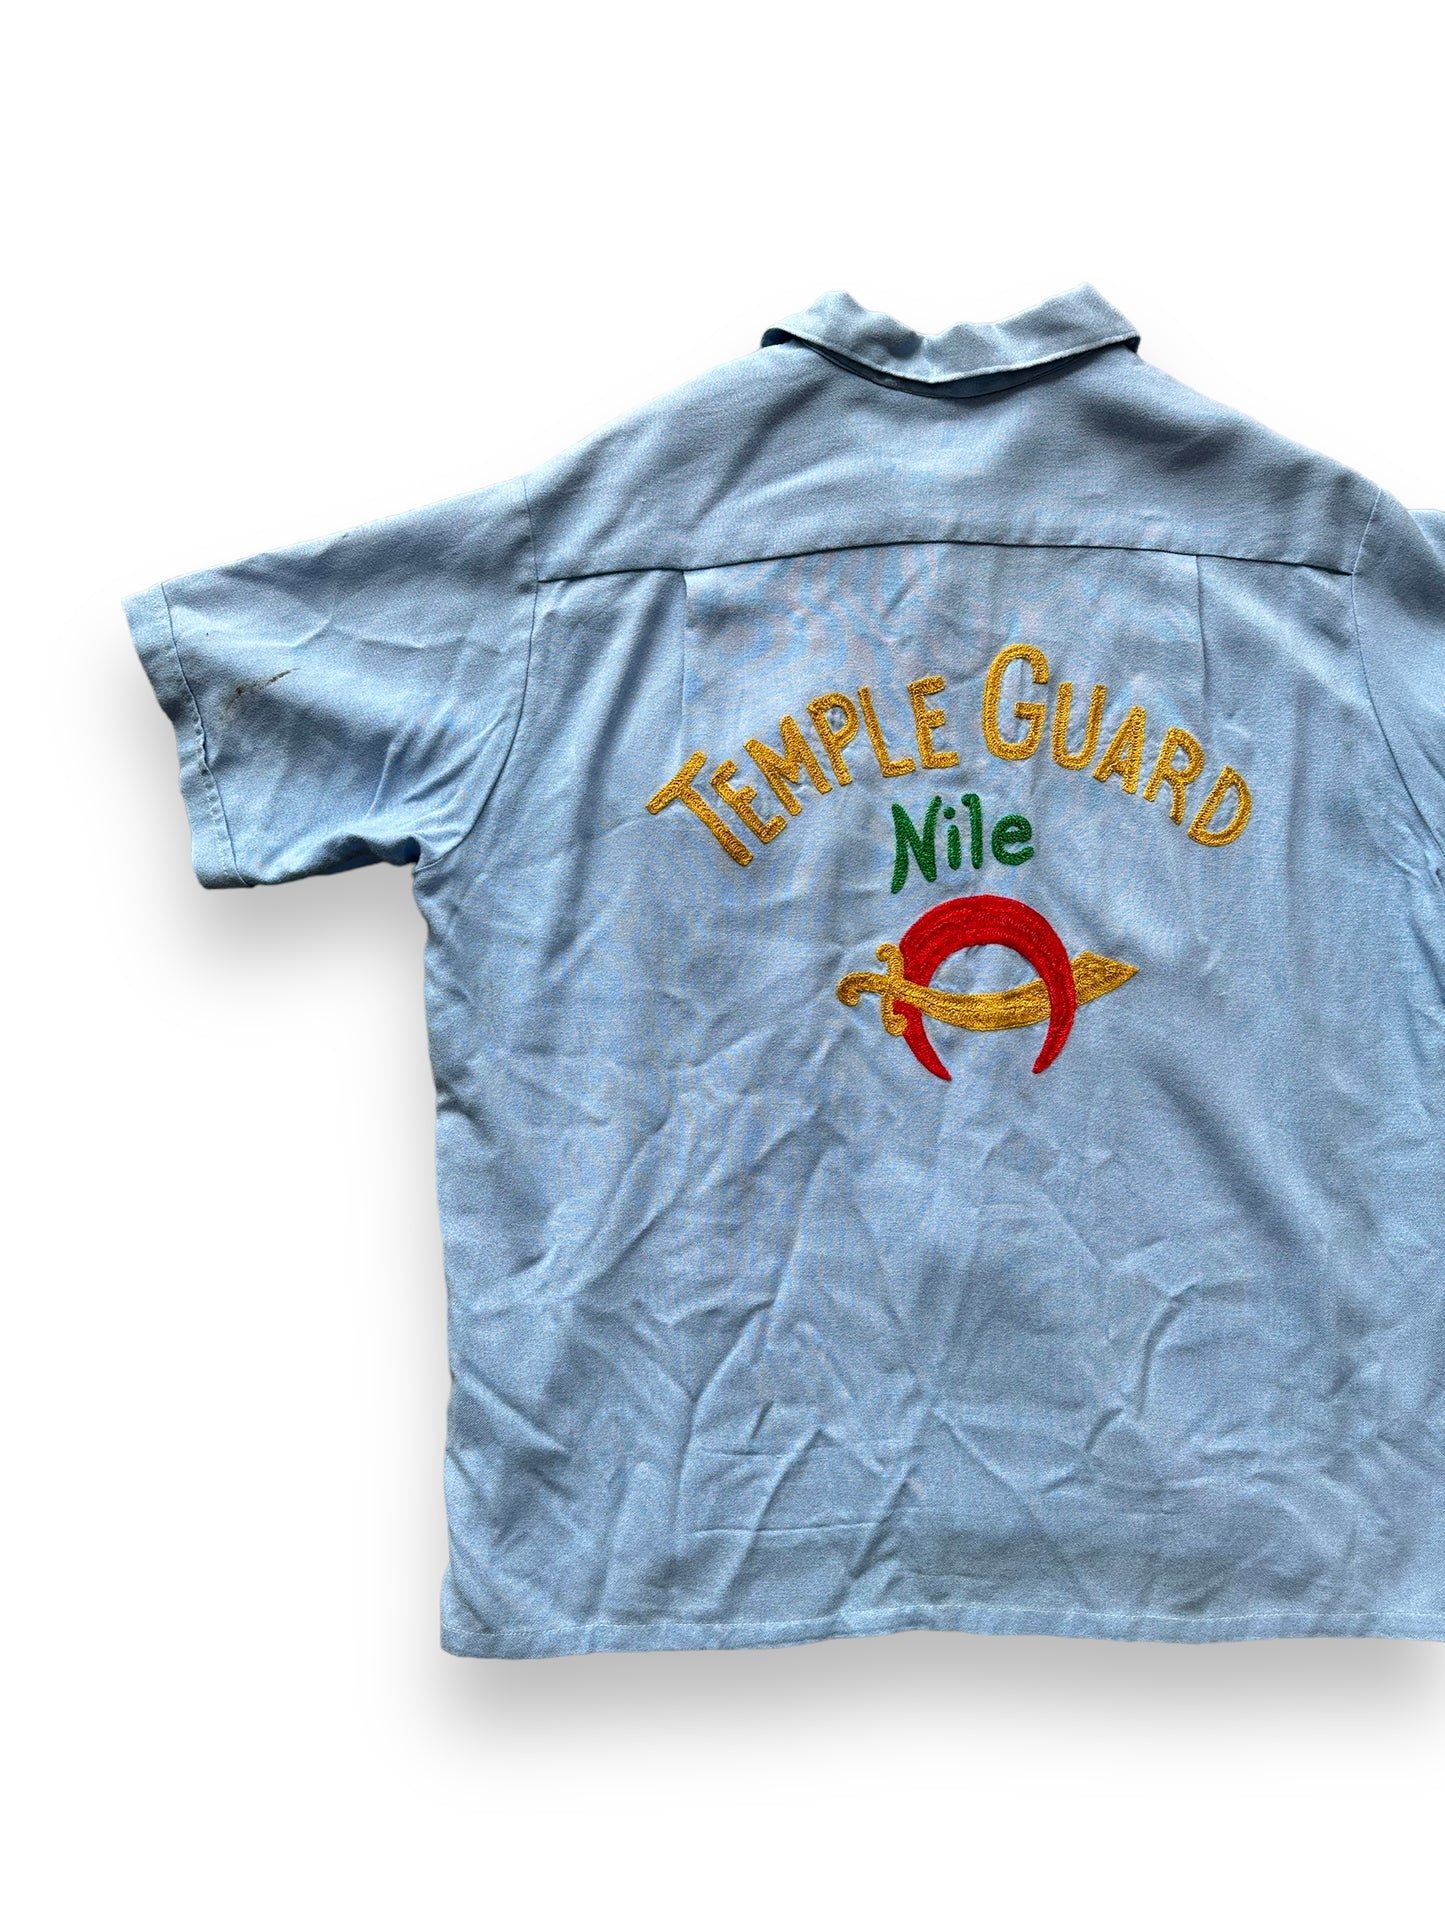 Back left of Vintage "Nile Temple Guard" Chainstitched Bowling Shirt SZ L | Vintage Bowling Shirt Seattle | Barn Owl Vintage Seattle